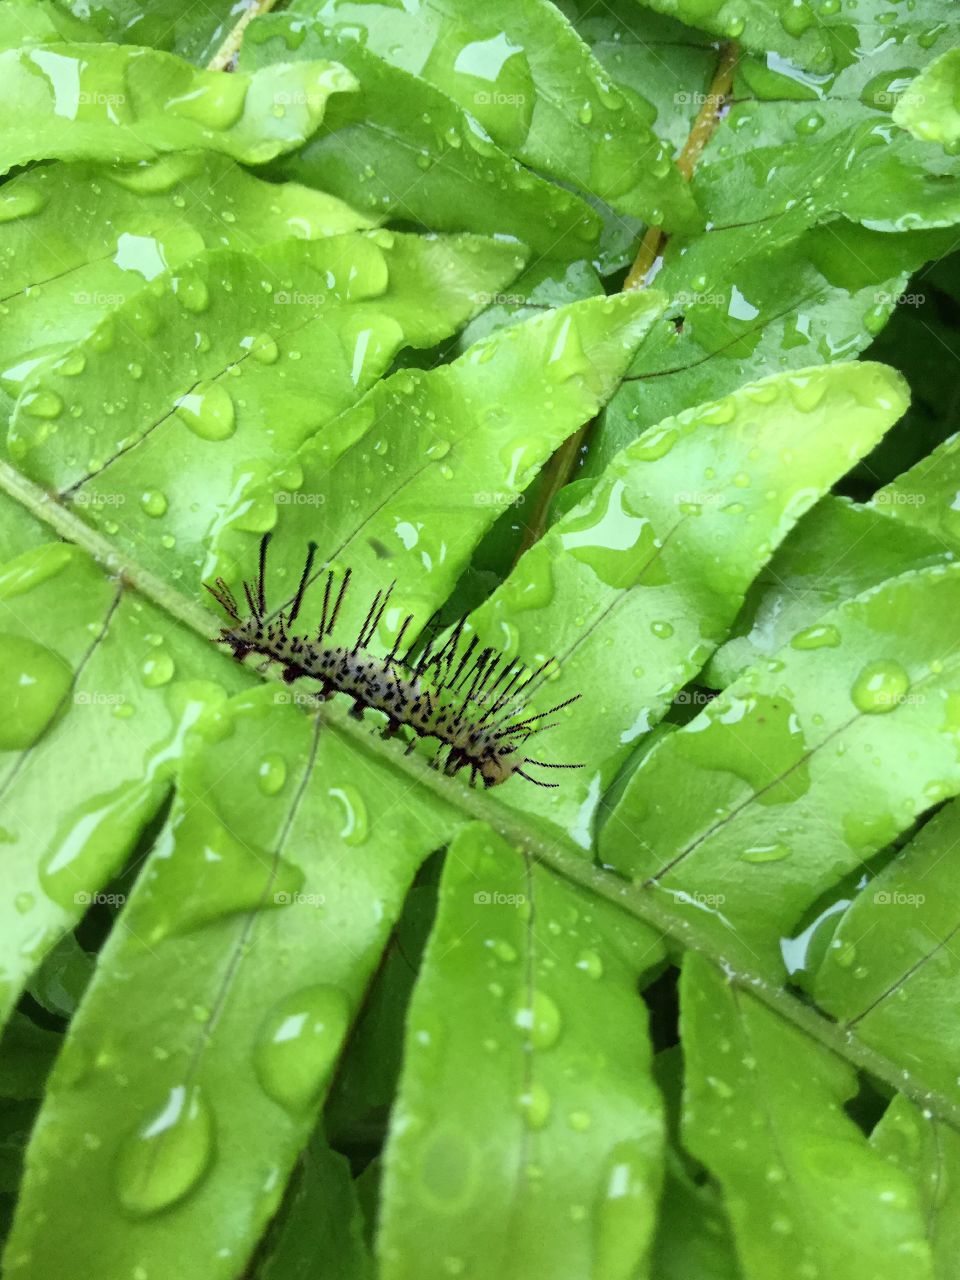 Caterpillars life